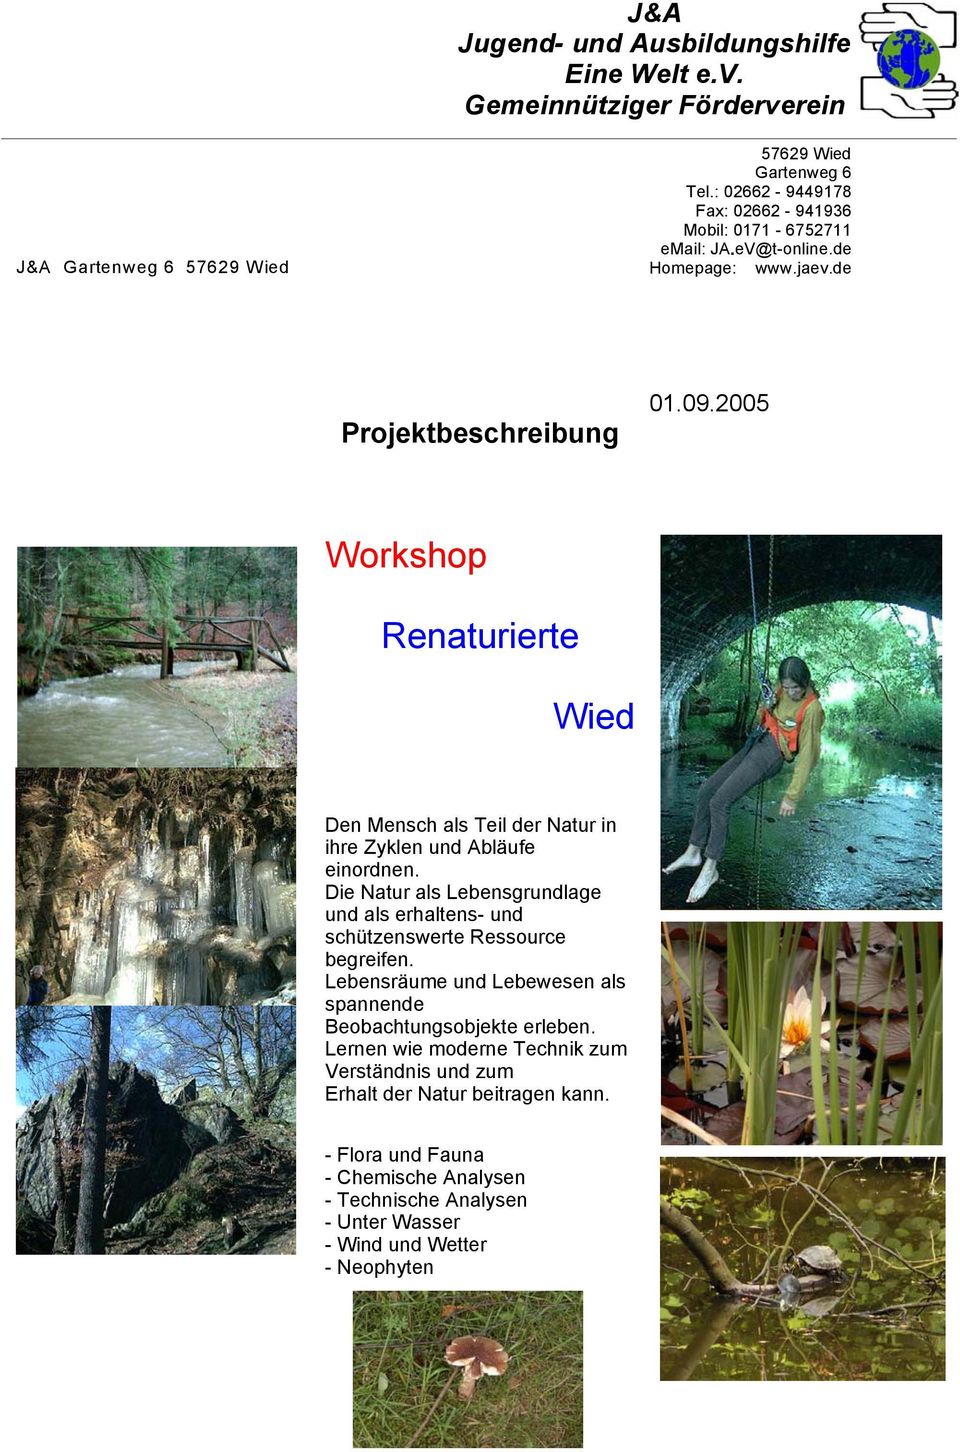 2005 Workshop Renaturierte Wied Den Mensch als Teil der Natur in ihre Zyklen und Abläufe einordnen.